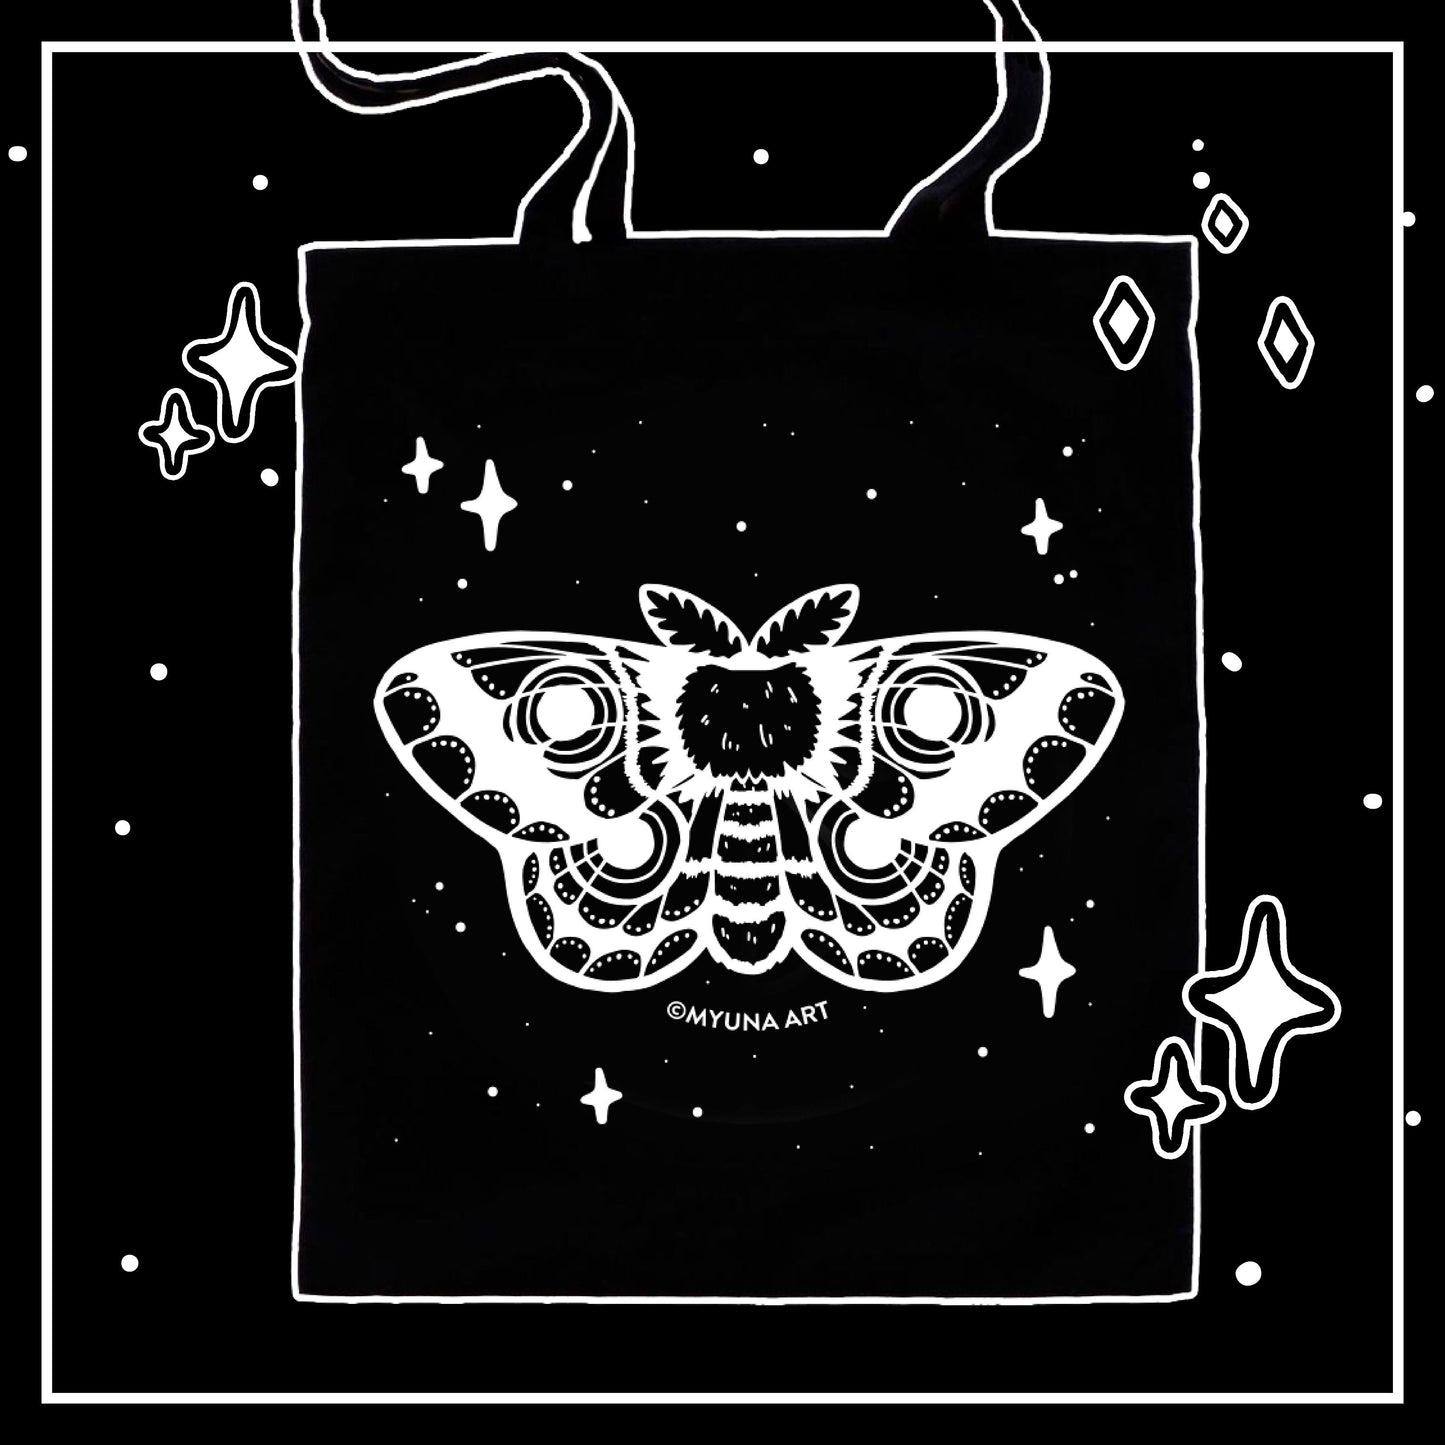 Myuna’s Moth Tote Bag – Black Tote Bag, Animal Tote Bag, Tote Bag with long Handles, Cute Tote Bag with Screenprinting Application